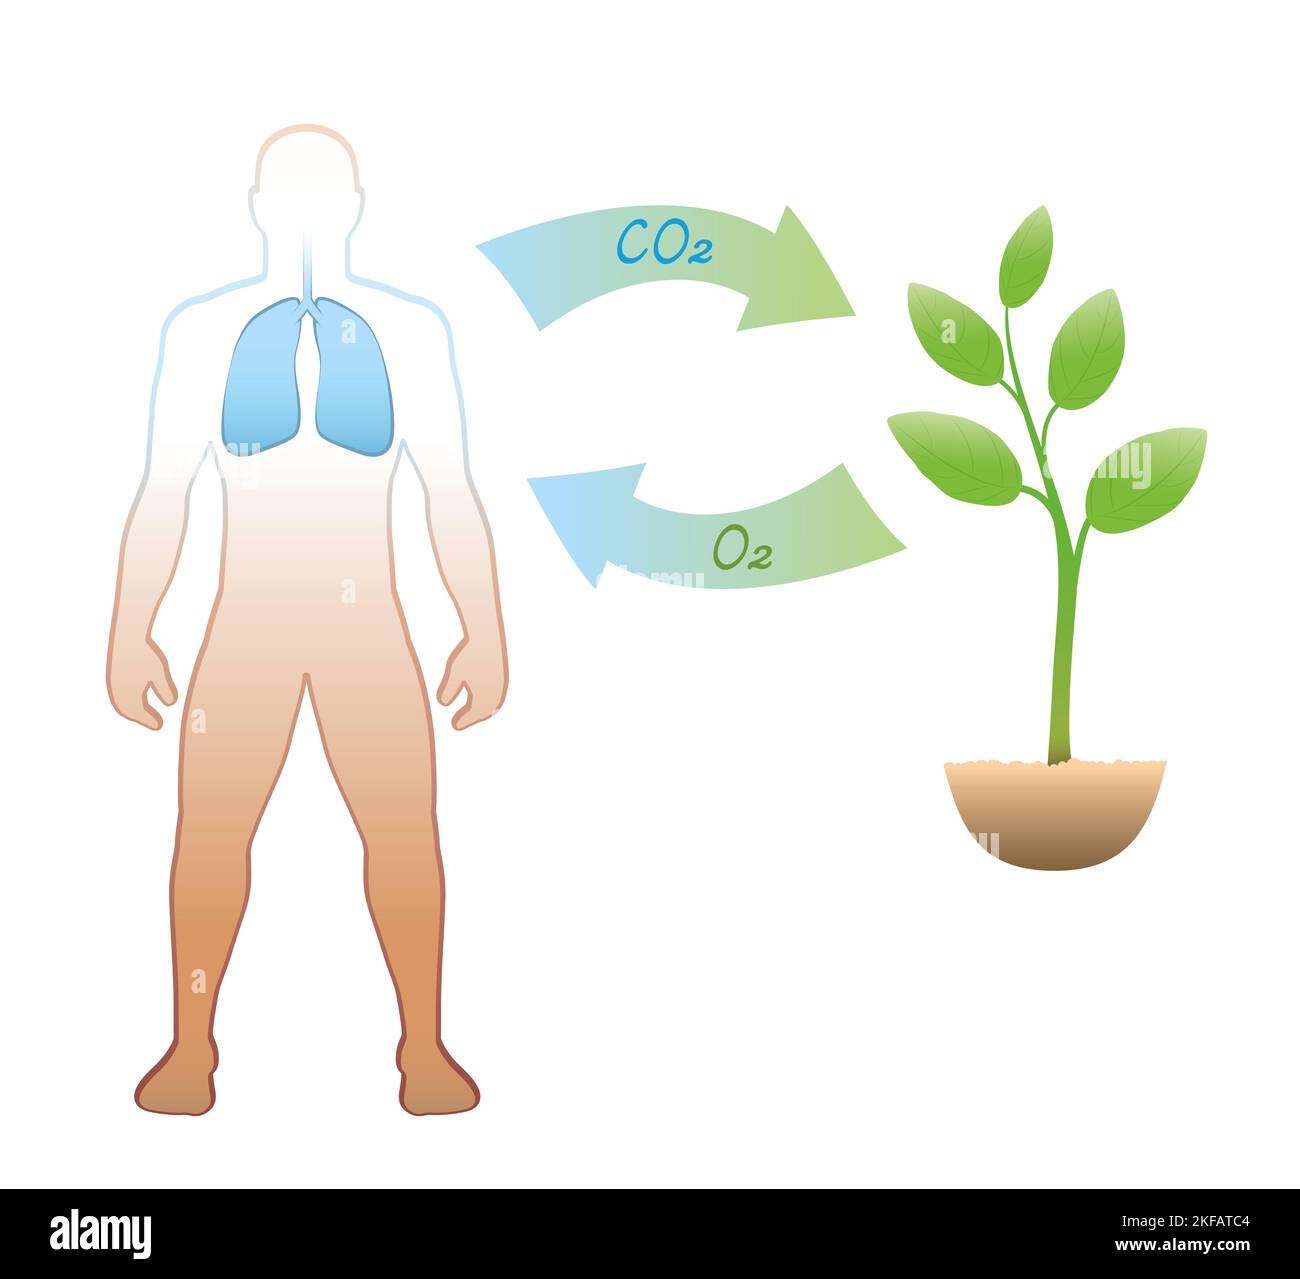 Ciclo del carbonio tra esseri umani e piante - espirazione e assunzione di anidride carbonica CO2 - inalazione e rilascio di ossigeno O2. Foto Stock